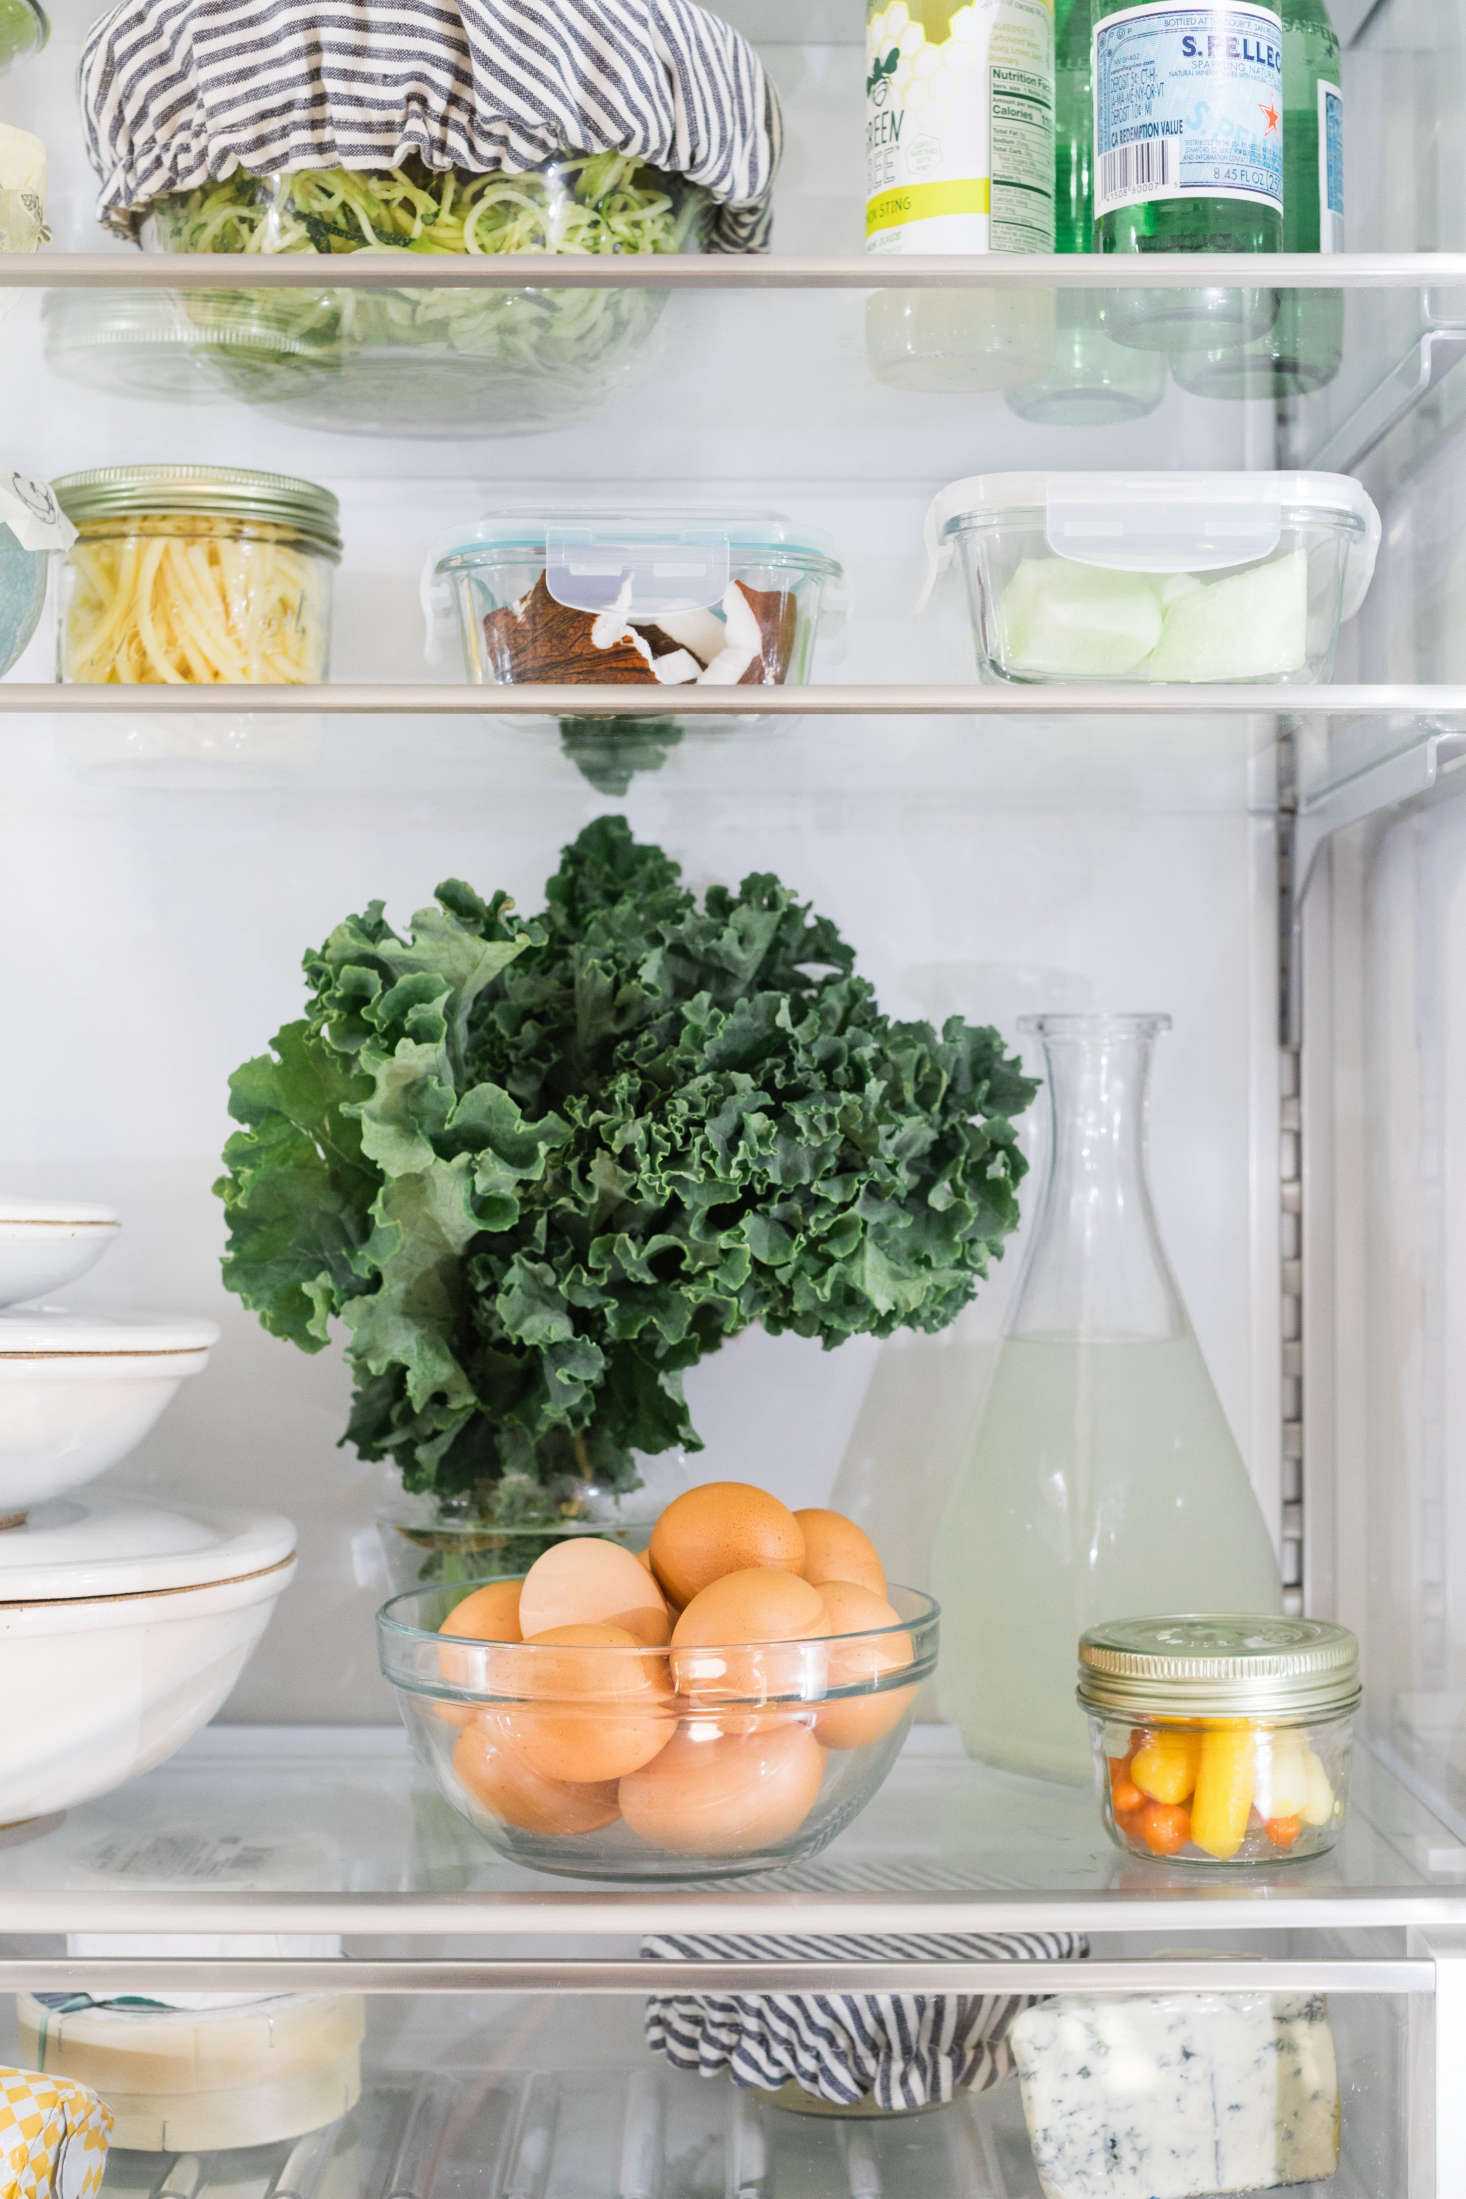 Как правильно хранить овощи, фрукты и ягоды в холодильнике